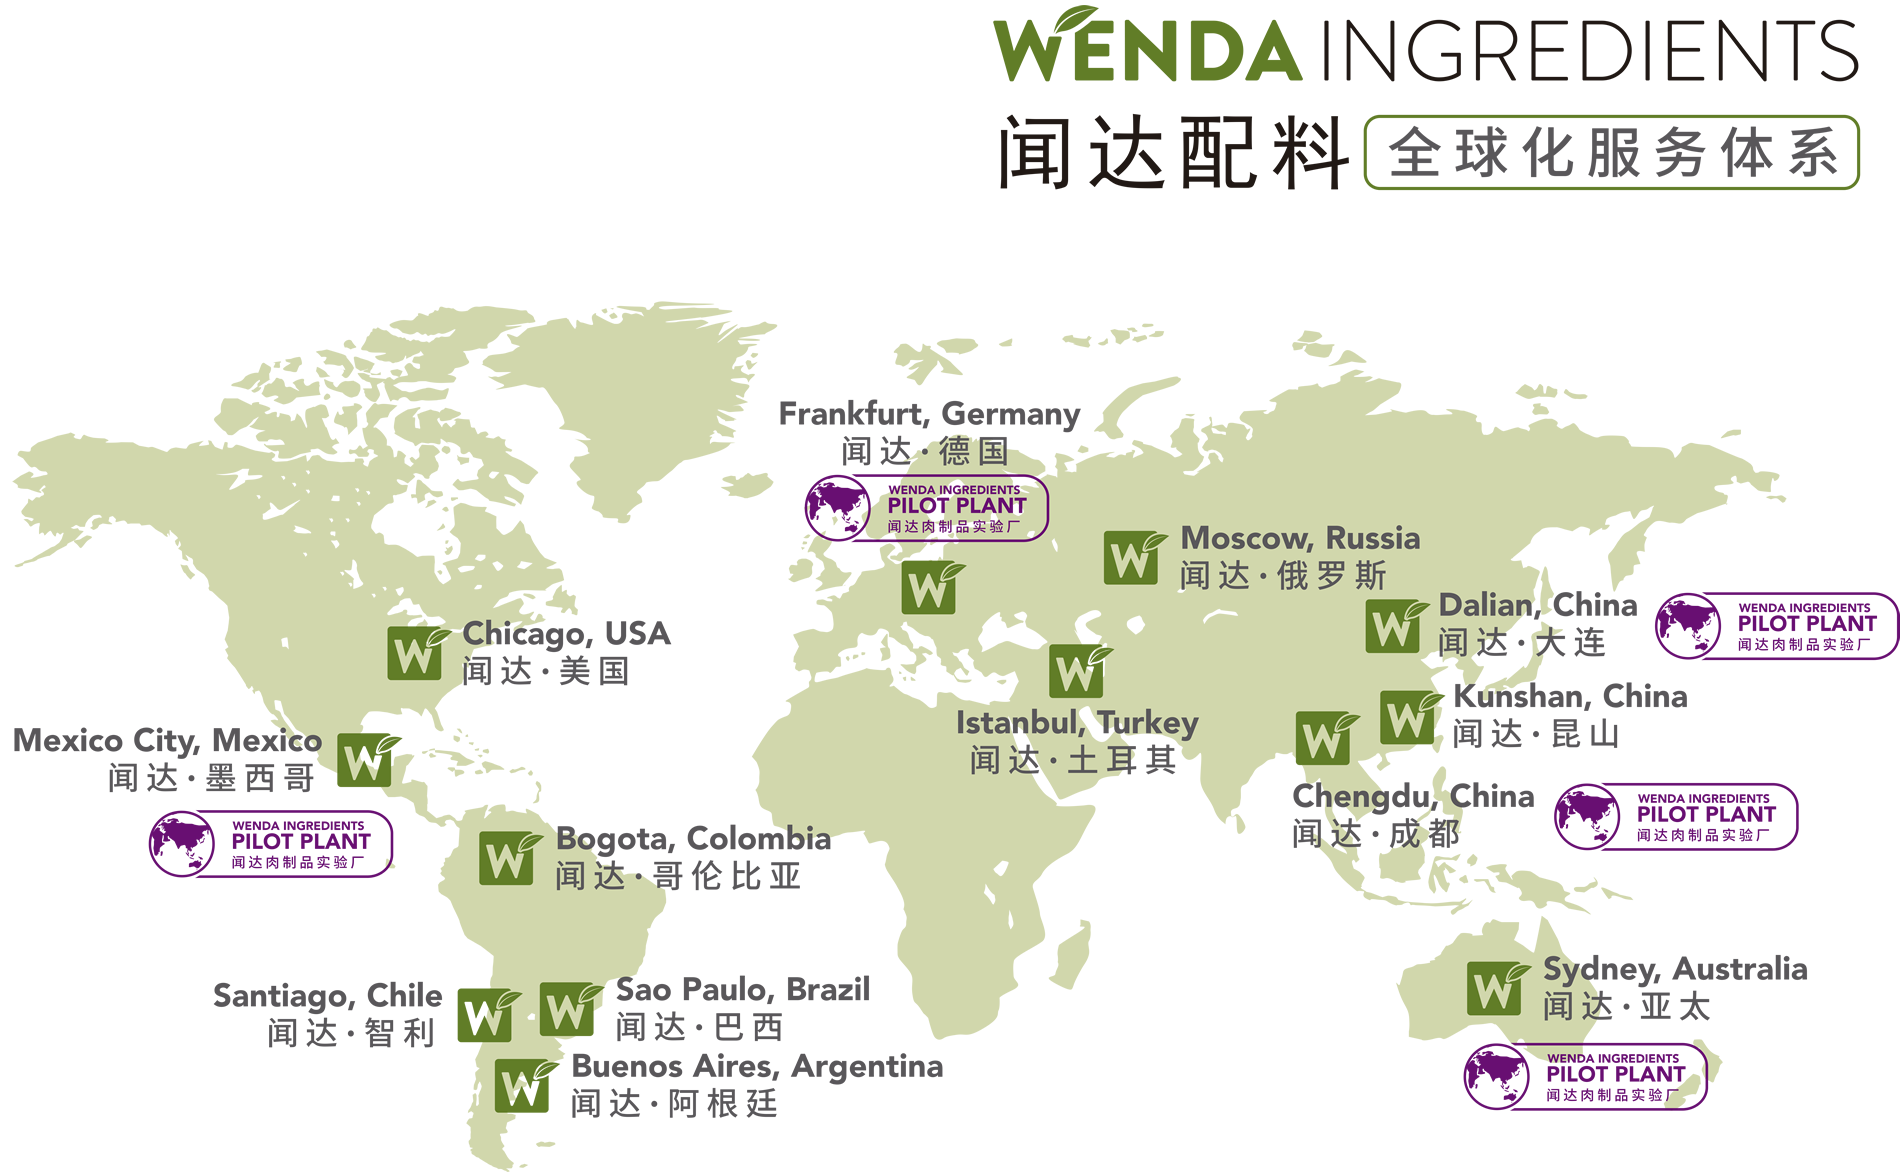 Wenda - WENDA IN NUMBERS